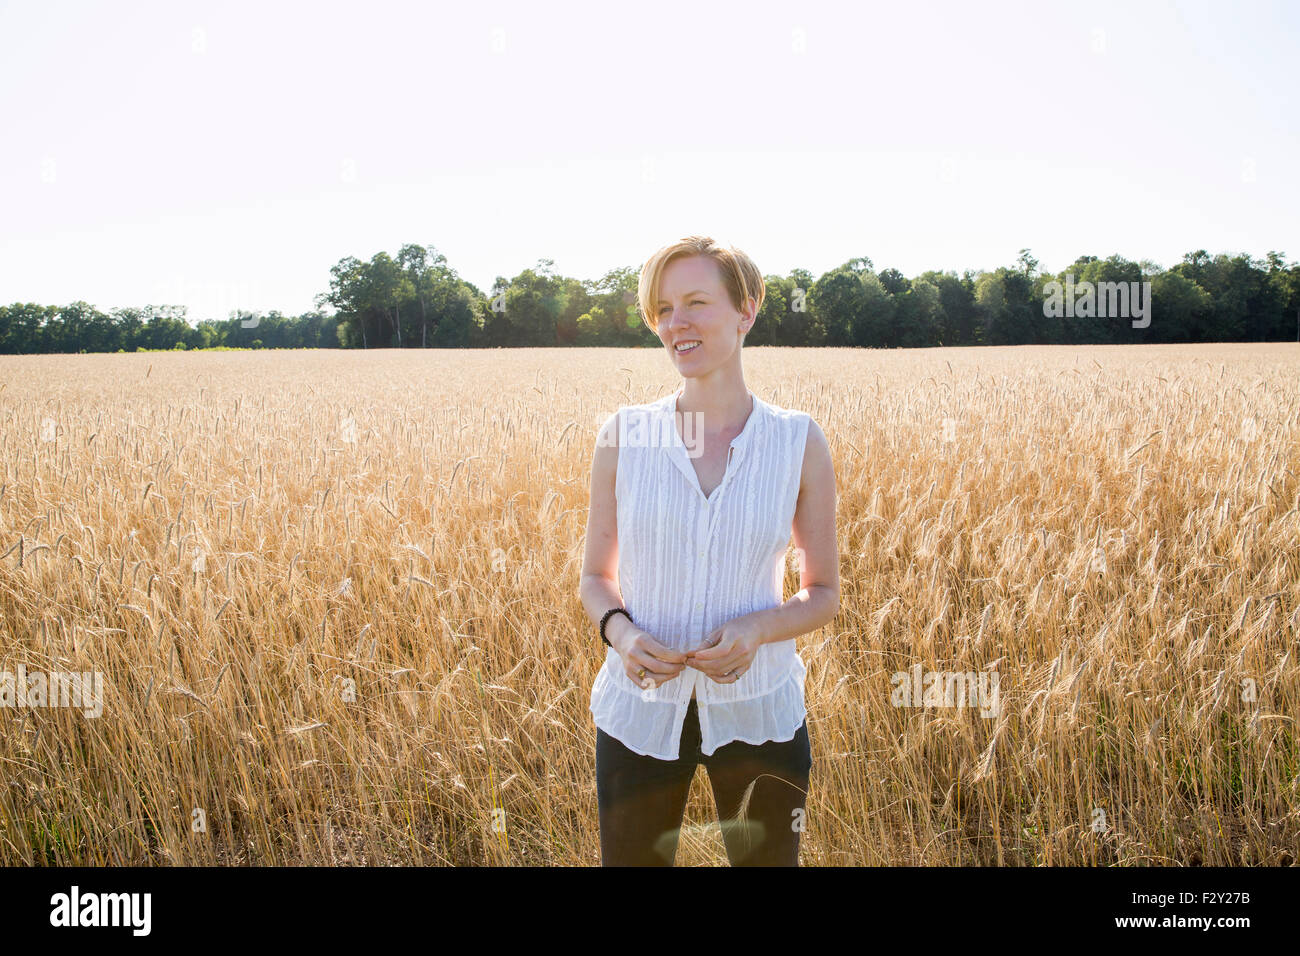 Halblängen Porträt einer jungen Frau, stehend in einem Maisfeld. Stockfoto